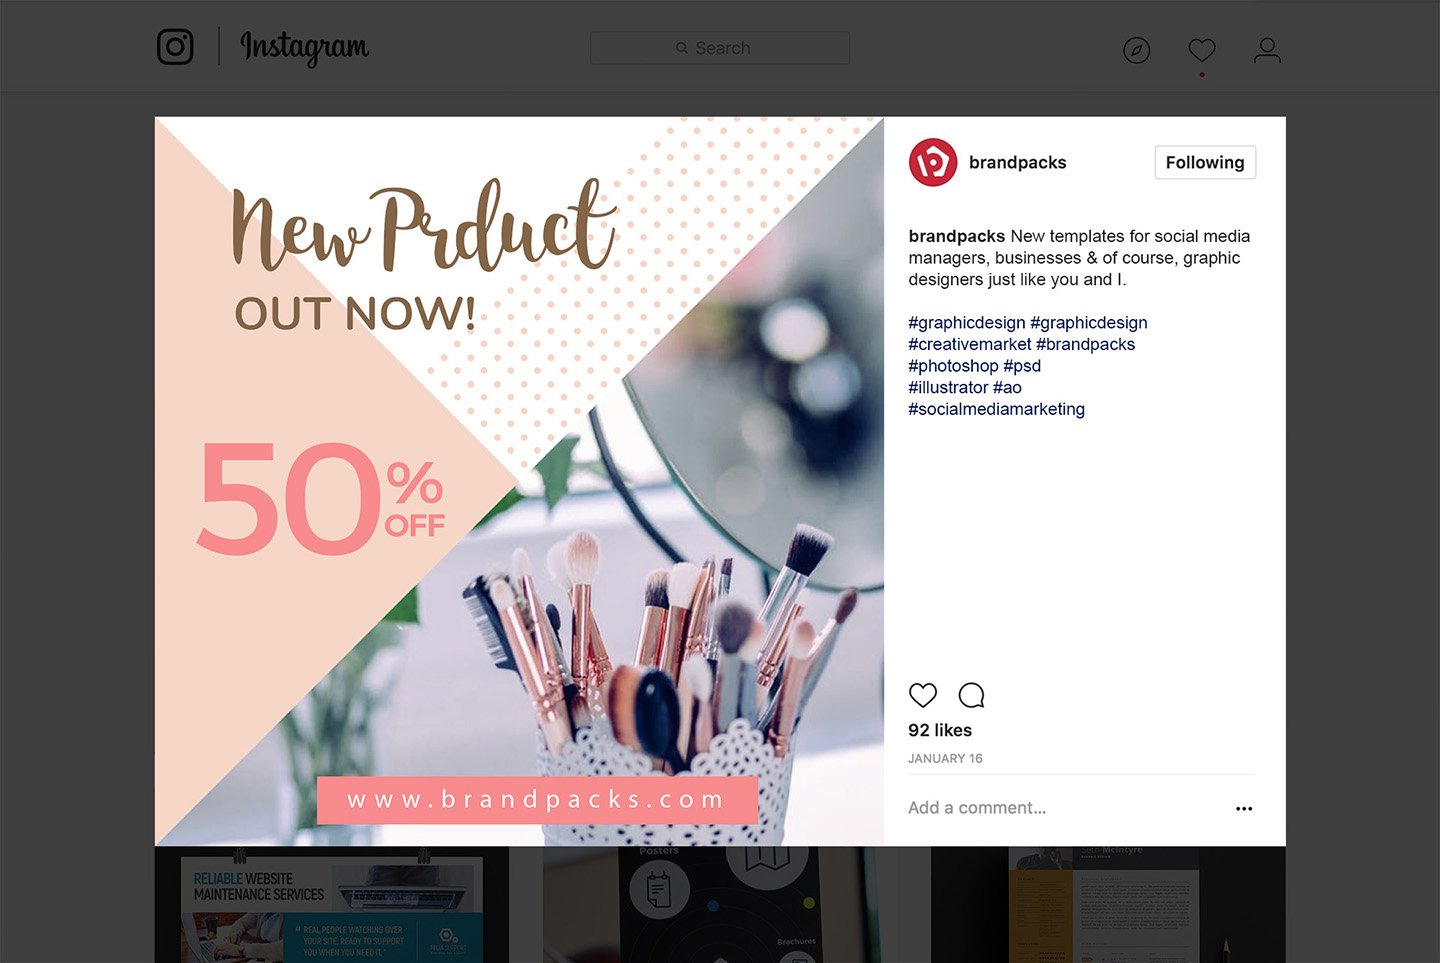 粉色系女性化妆品服装电商营销海报Instagram模板 Social Media Templates Pack Vol.5插图7